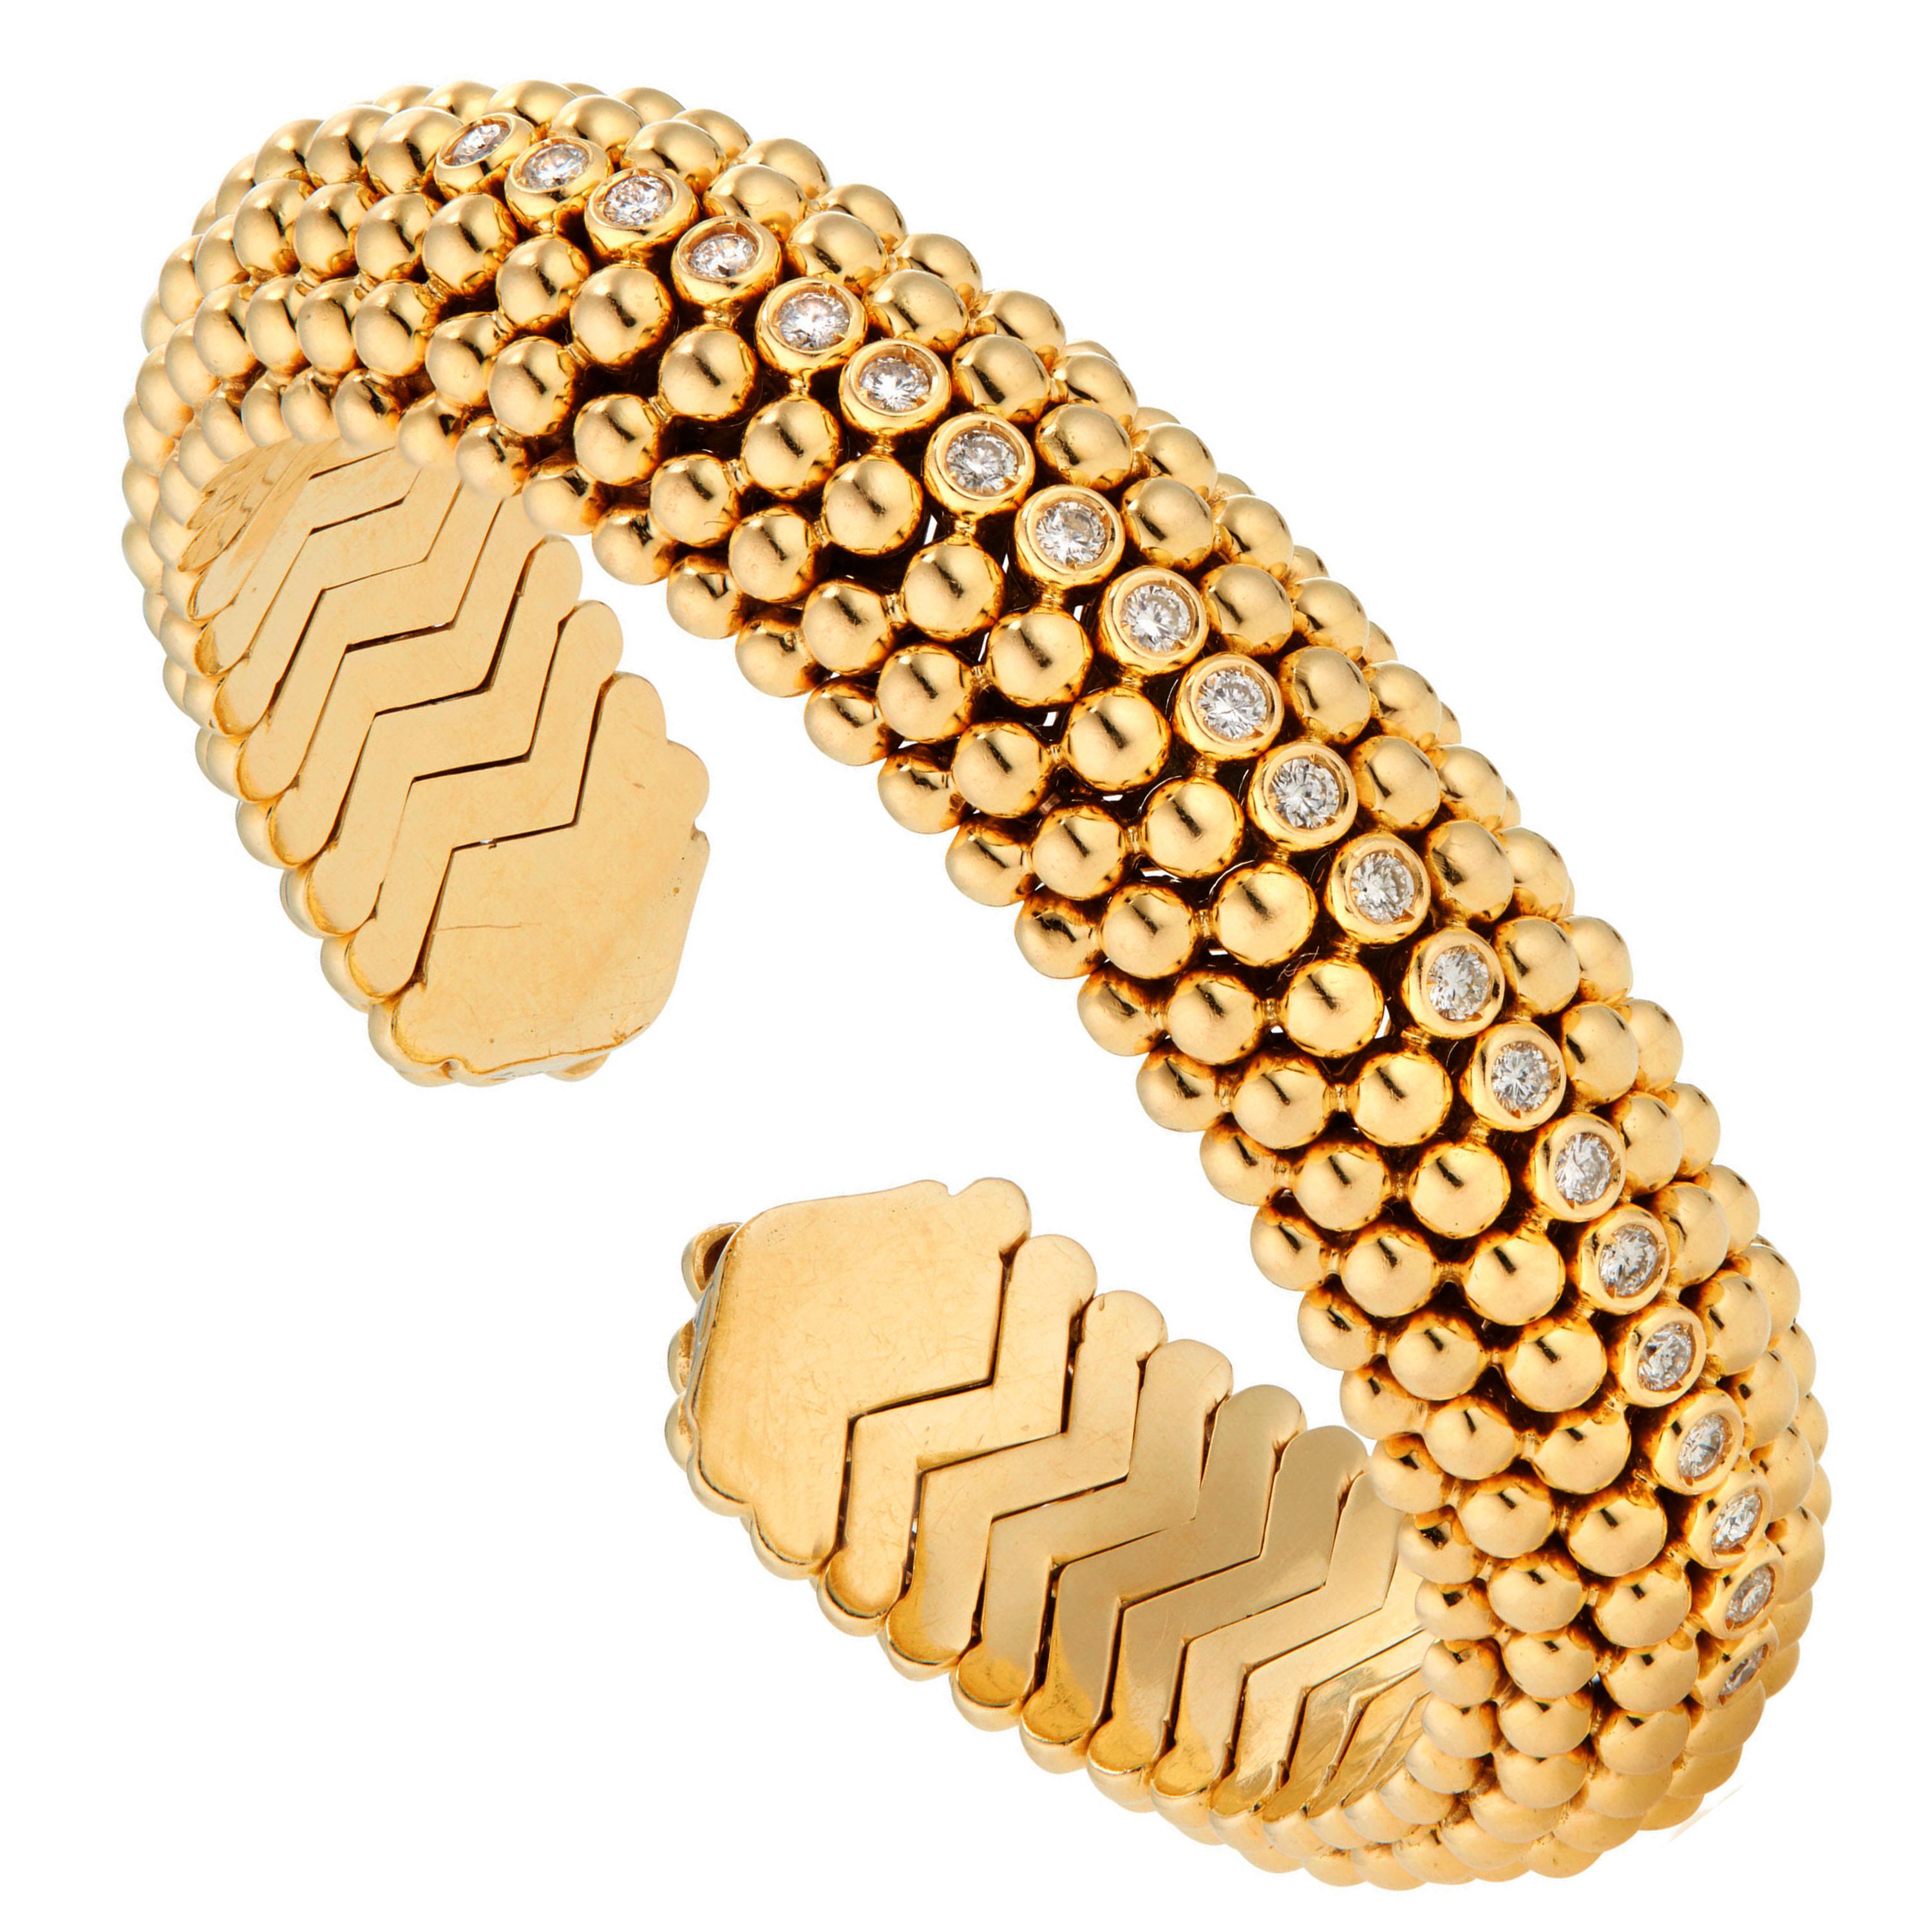 Ein Vintage-Armband von Bvlgari aus der Zeit des Dolce Vita im Rom der 1950er Jahre. Dieses Armband ist als Perlengeflecht auf handgeformten, geschwungenen Tubogas-Gliedern aus 18 Karat Gelbgold gestaltet. Die mittlere Reihe ist mit den feinsten